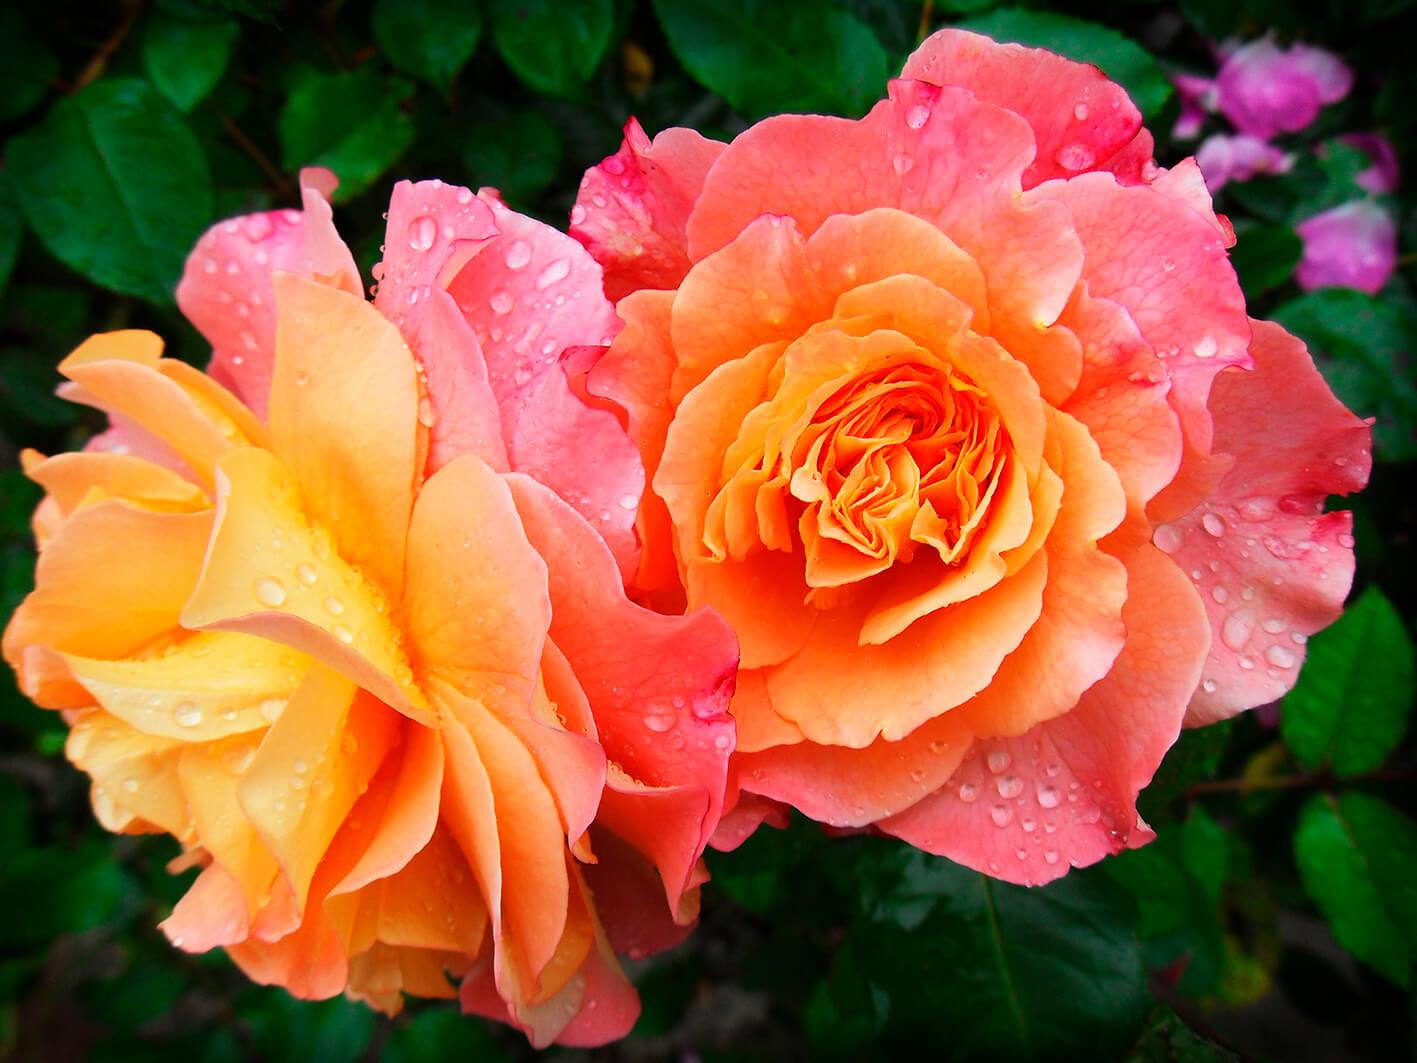 Roses ɣi siwo ƒe amadede nye pink